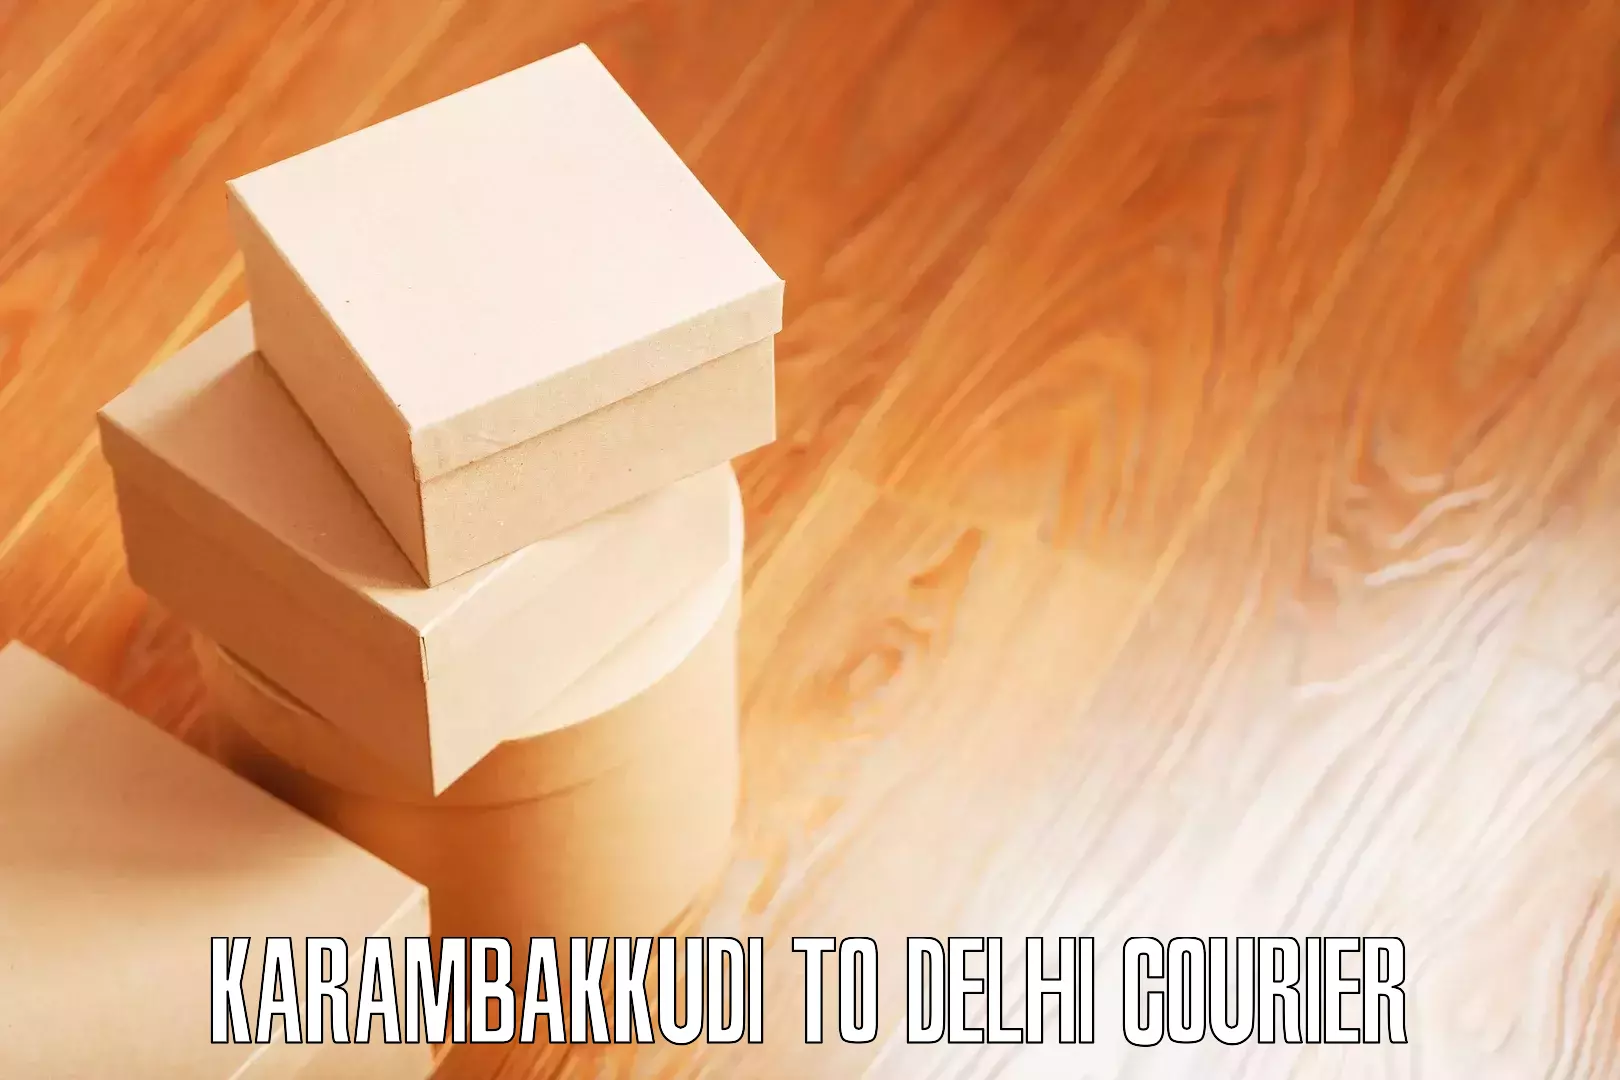 Home relocation experts Karambakkudi to Delhi